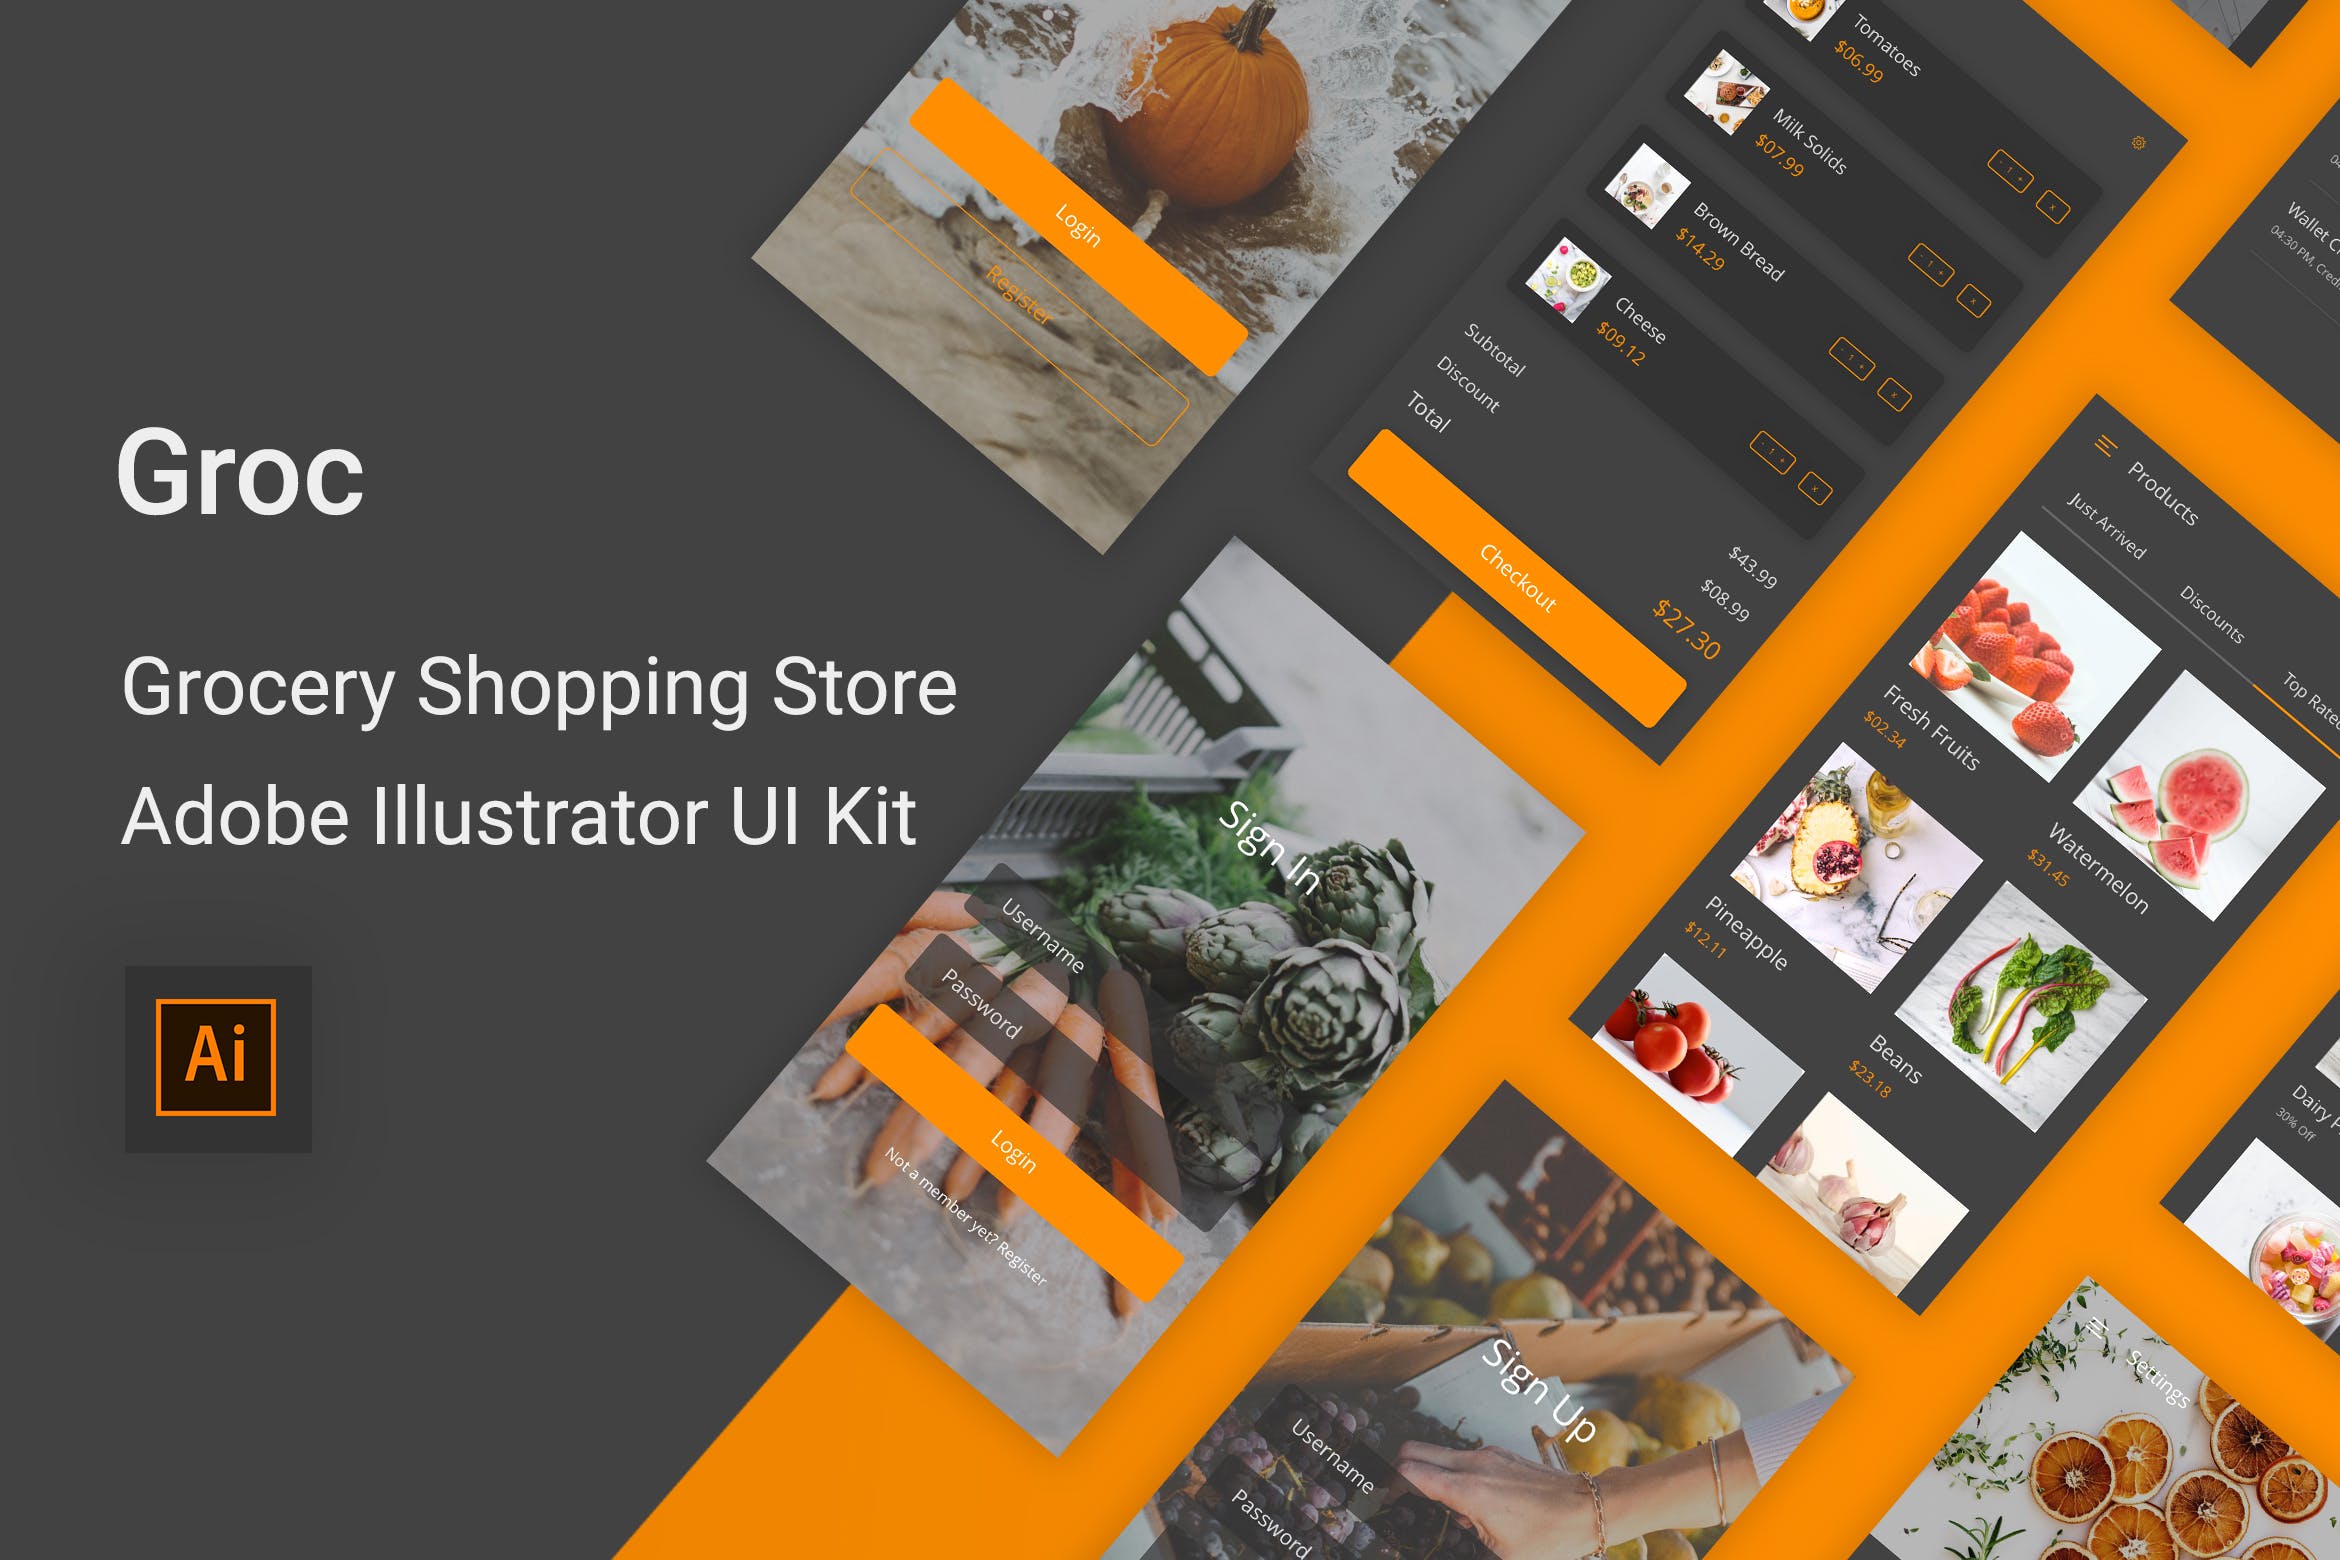 杂货店水果店购物APP应用UI设计第一素材精选套件 Groc – Grocery Shopping App in Adobe Illustrator插图